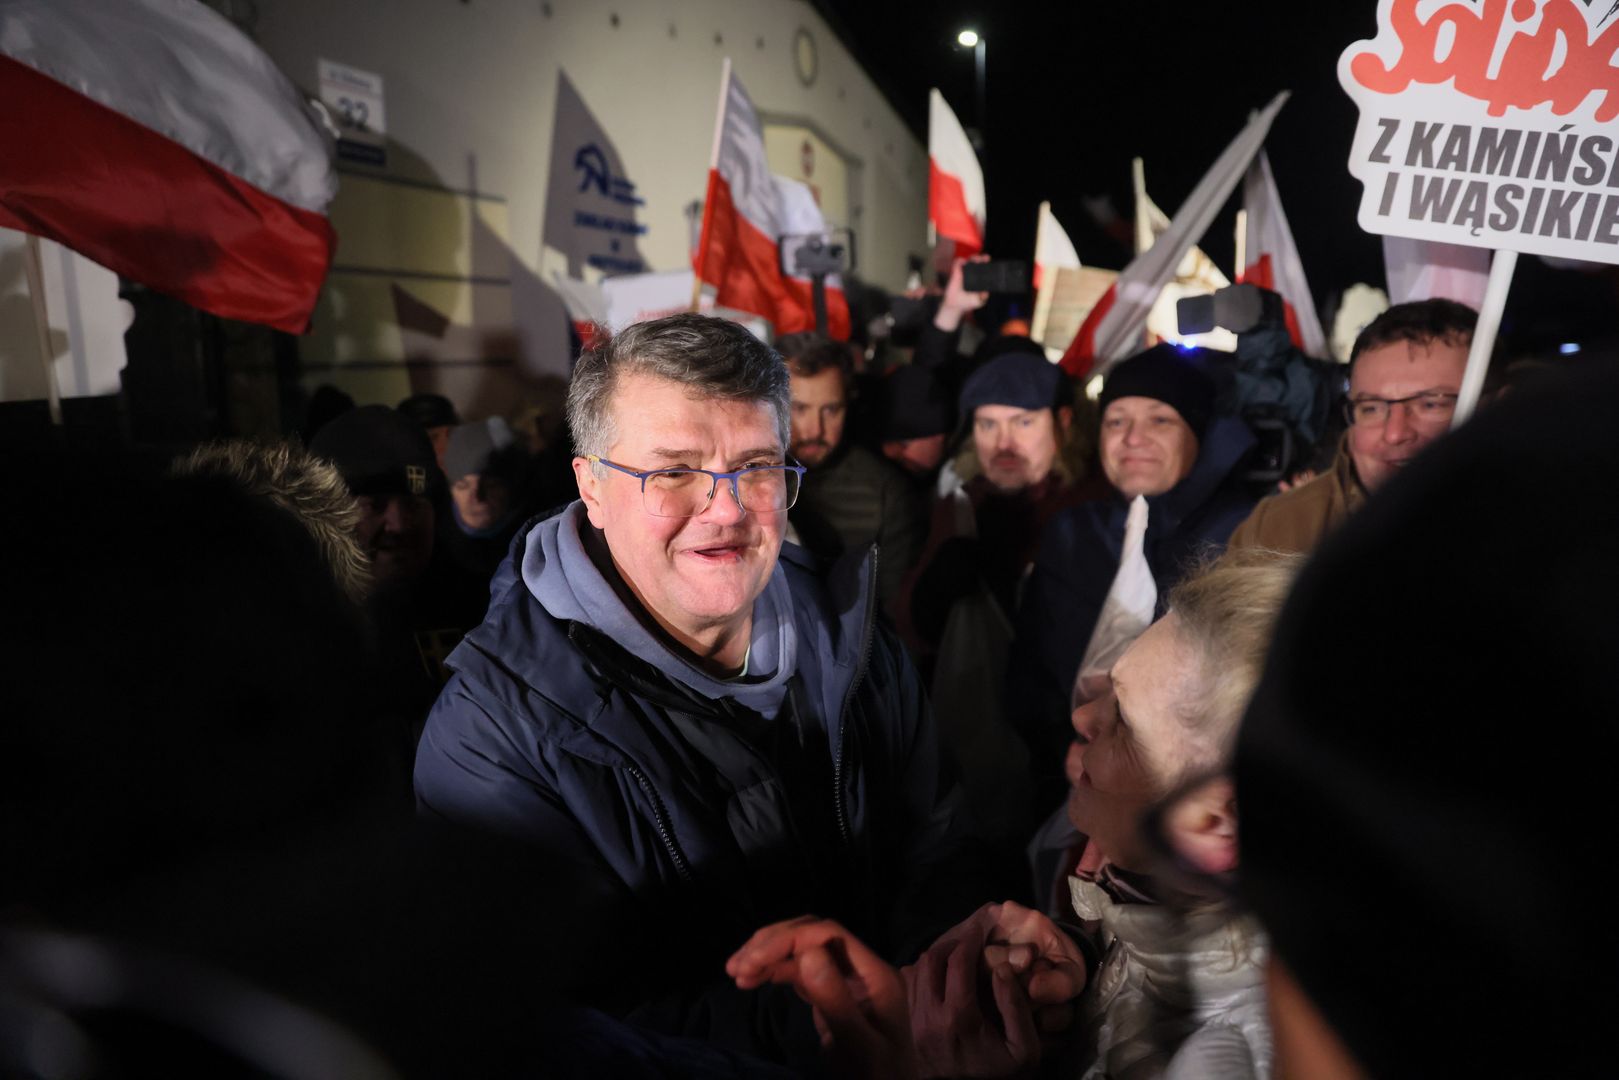 Kamiński i Wąsik wrócą do Sejmu? Borowski wyjaśnia, dlaczego nie mogą